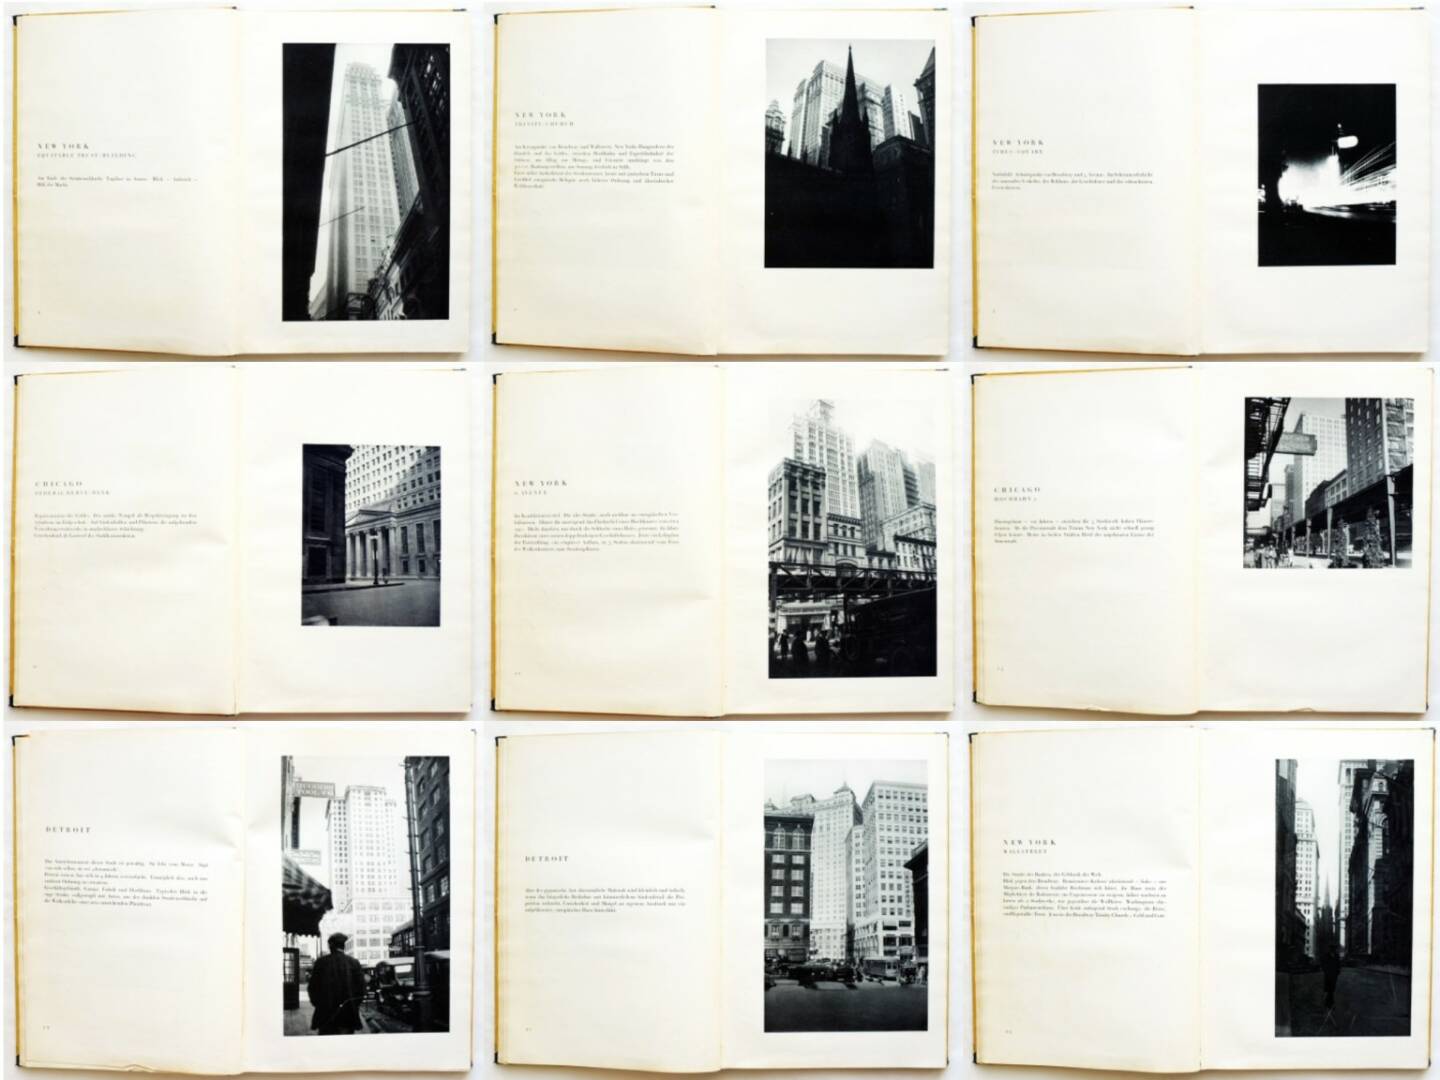 Erich Mendelsohn - Amerika: Bilderbuch eines Architekten, Rudolf Mosse Buchverlag 1926, Beispielseiten, sample spreads - http://josefchladek.com/book/erich_mendelsohn_-_amerika_bilderbuch_eines_architekten